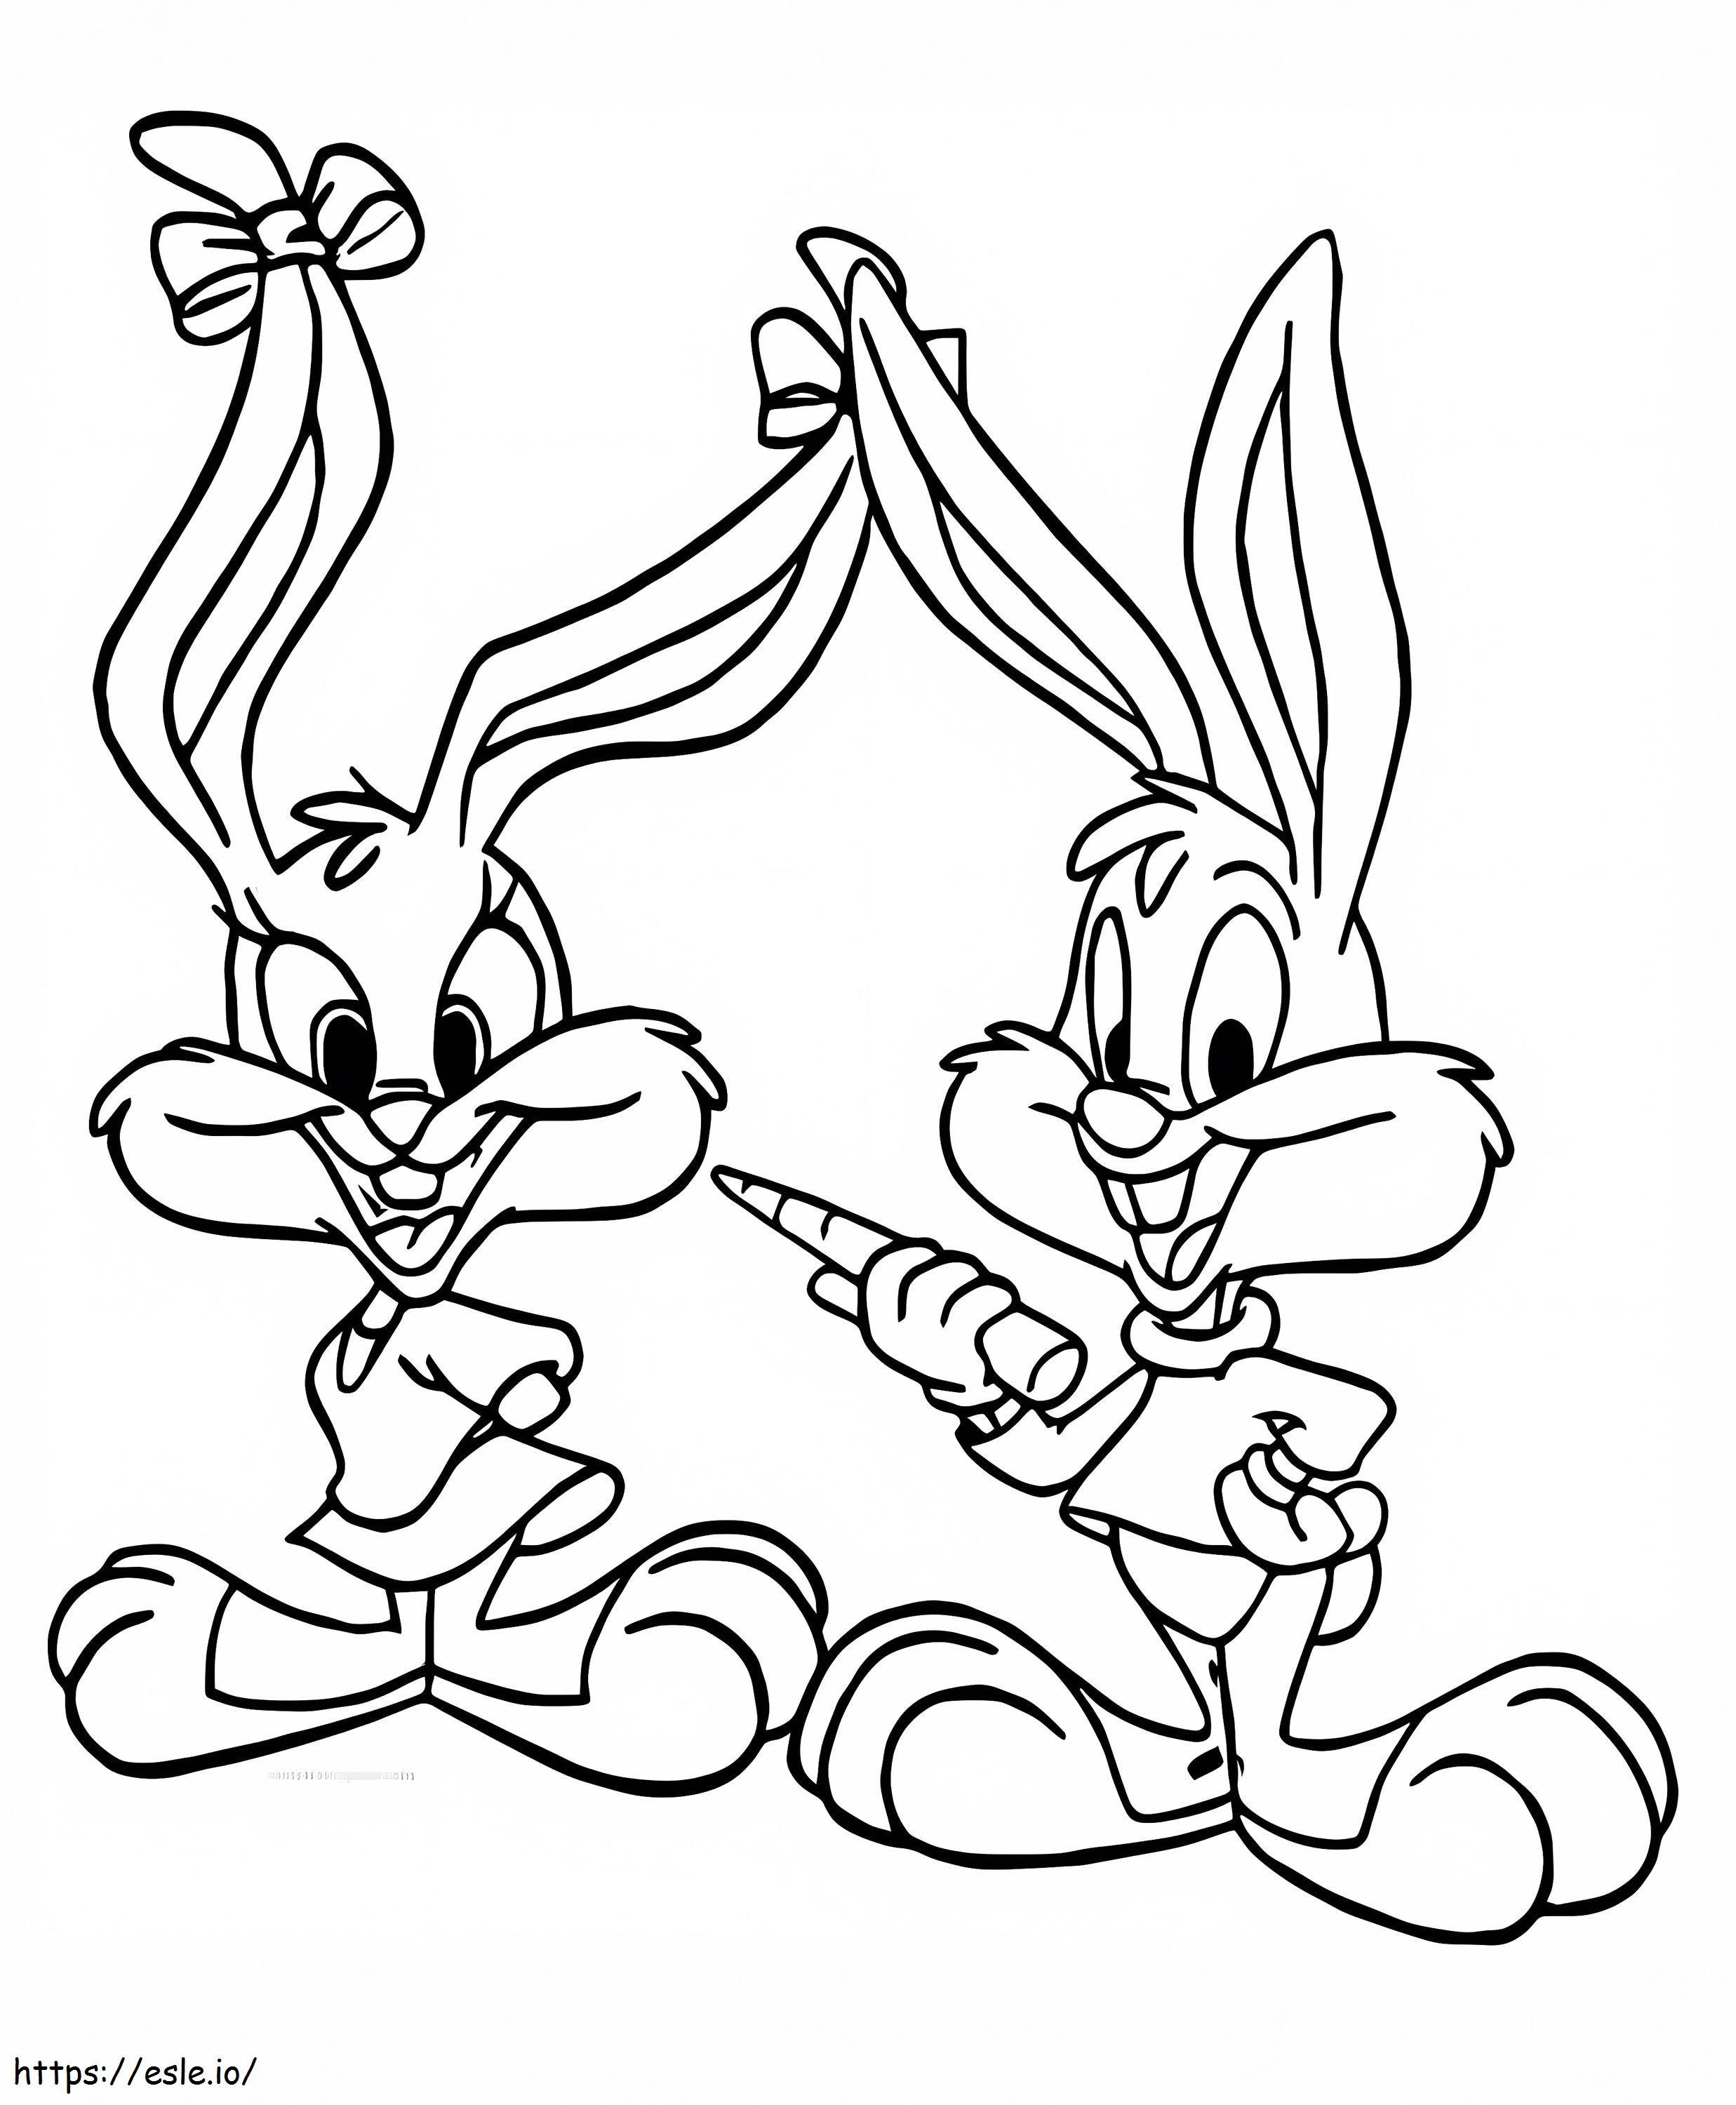 Babs Bunny en Buster Bunny kleurplaat kleurplaat